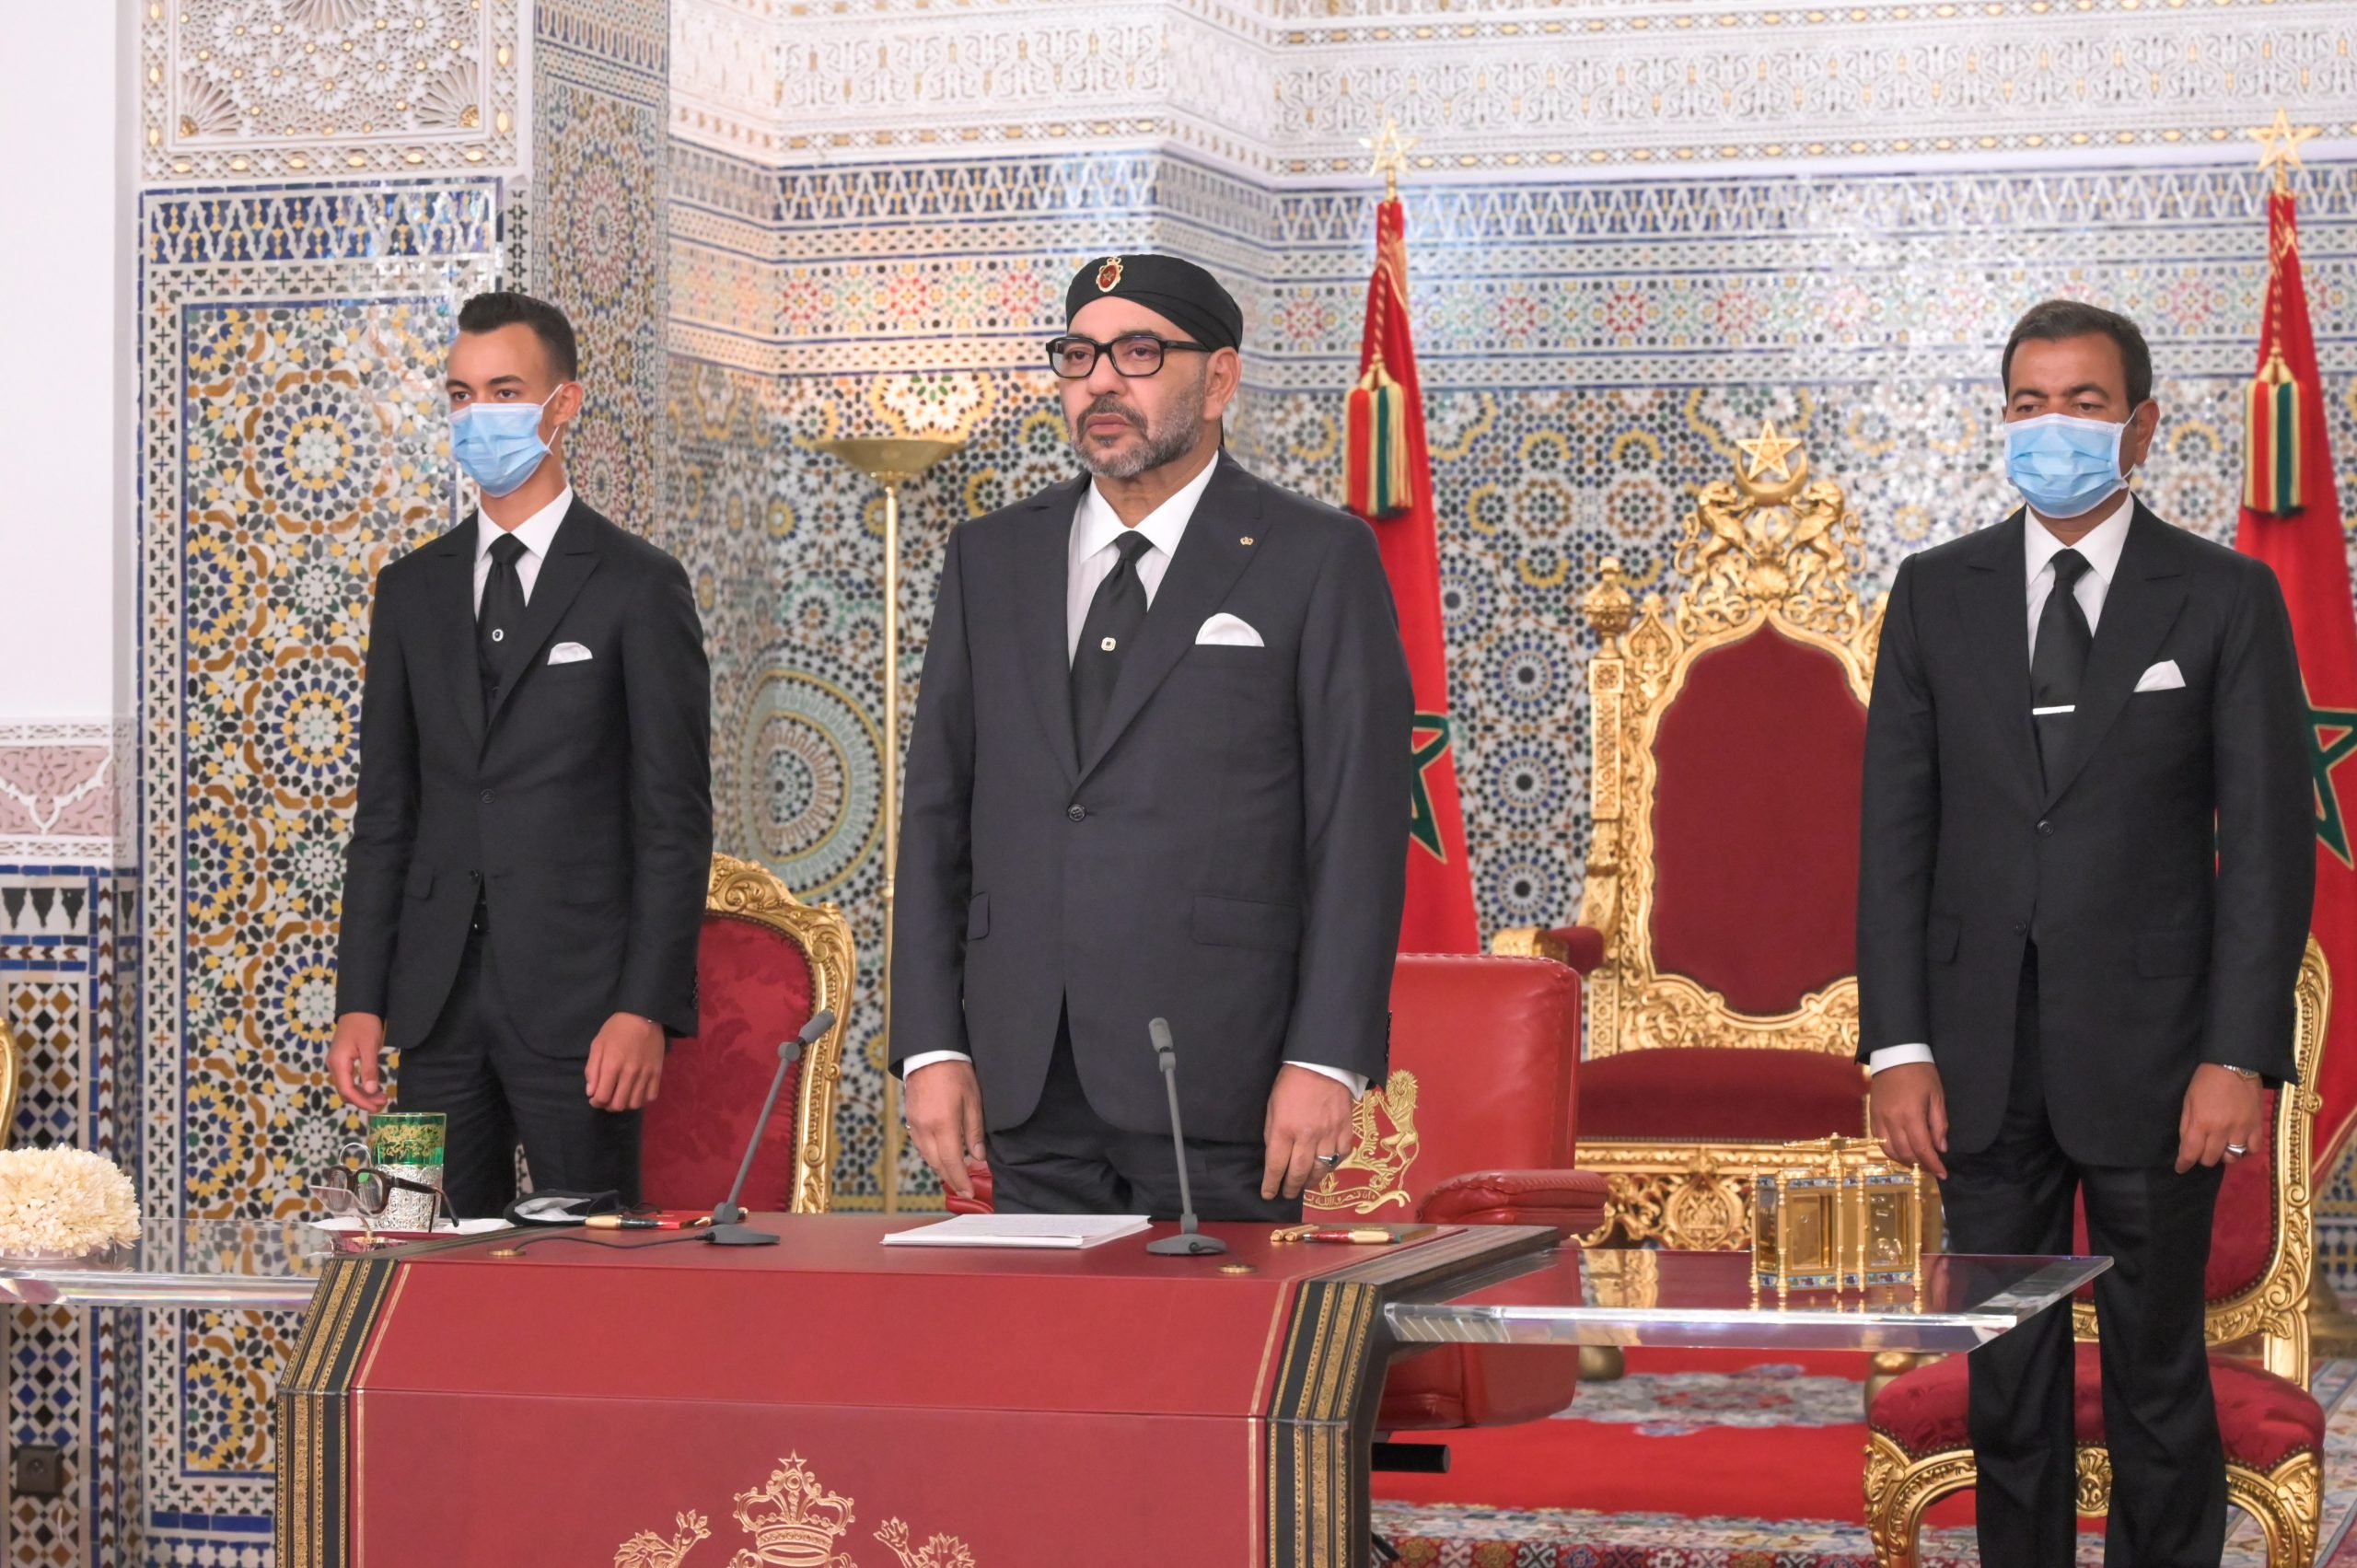 الملك محمد السادس: نجدد الدعوة لإخوتنا الجزائريين للعمل سويا، دون شروط، لبناء علاقات ثنائية أساسها الثقة والحوار وحسن الجوار